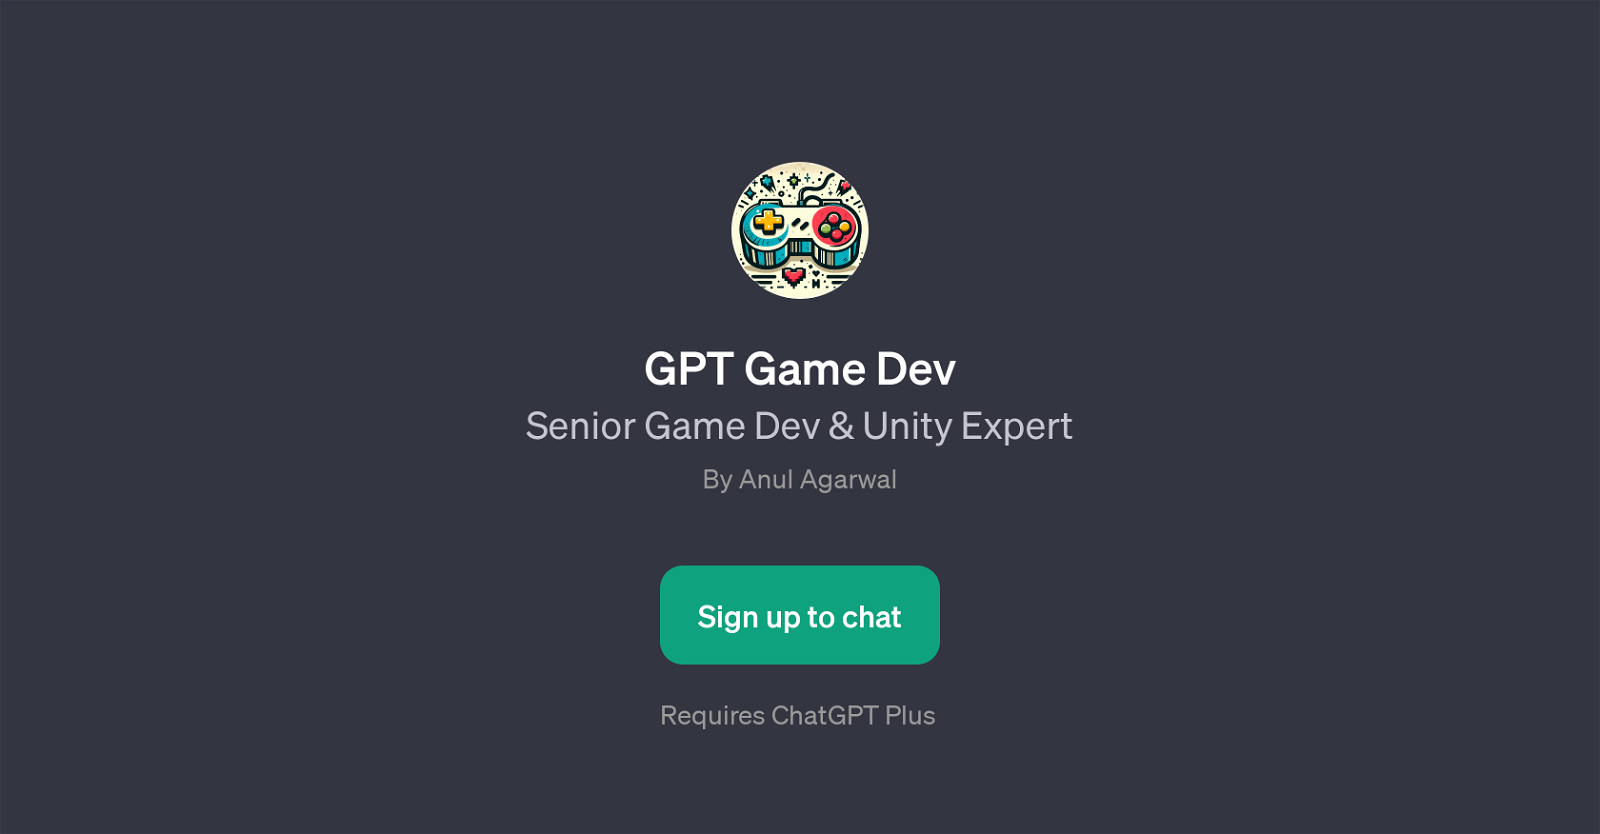 GPT Game Dev website